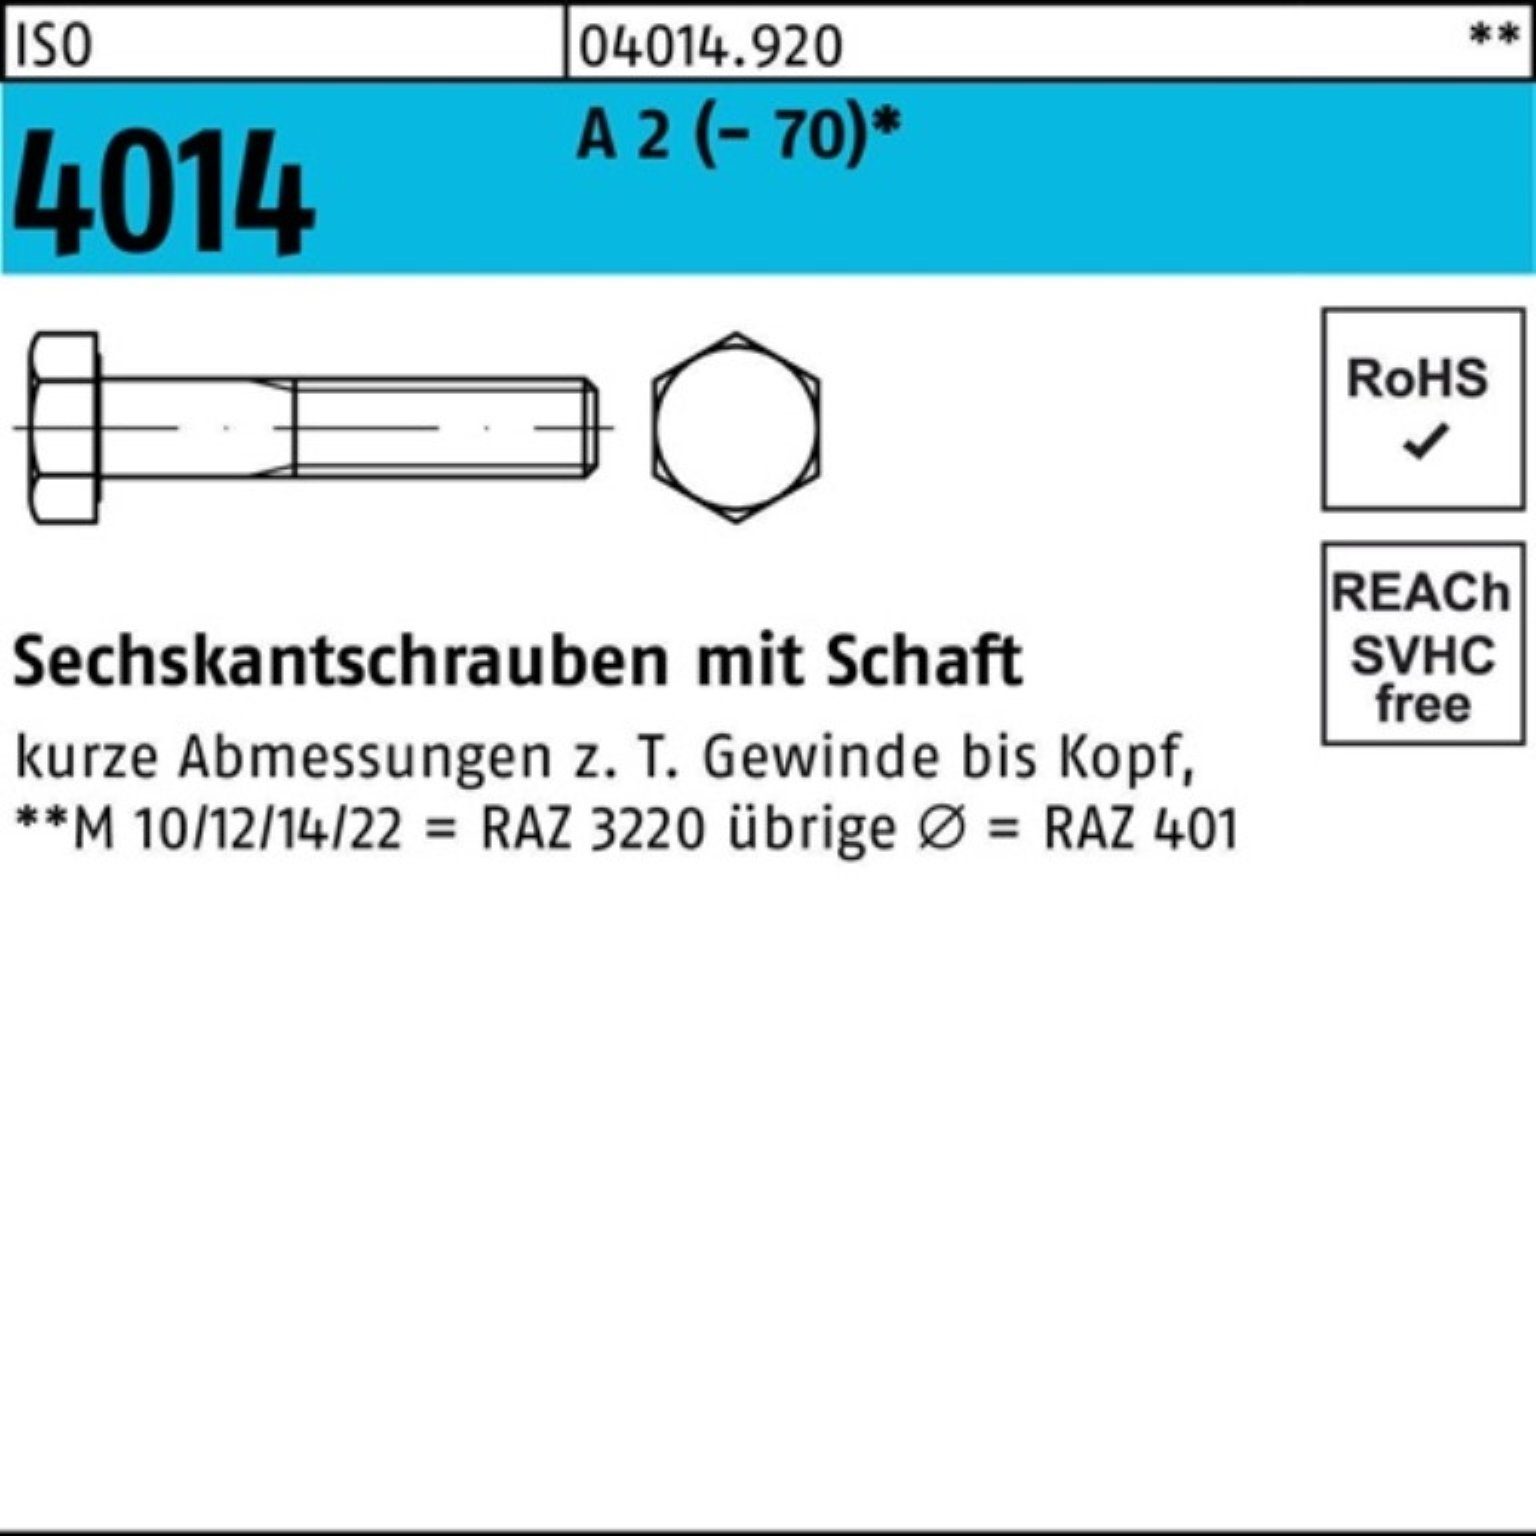 Bufab Sechskantschraube 100er Pack Sechskantschraube ISO 4014 Schaft M16x 60 A 2 (70) 50 St